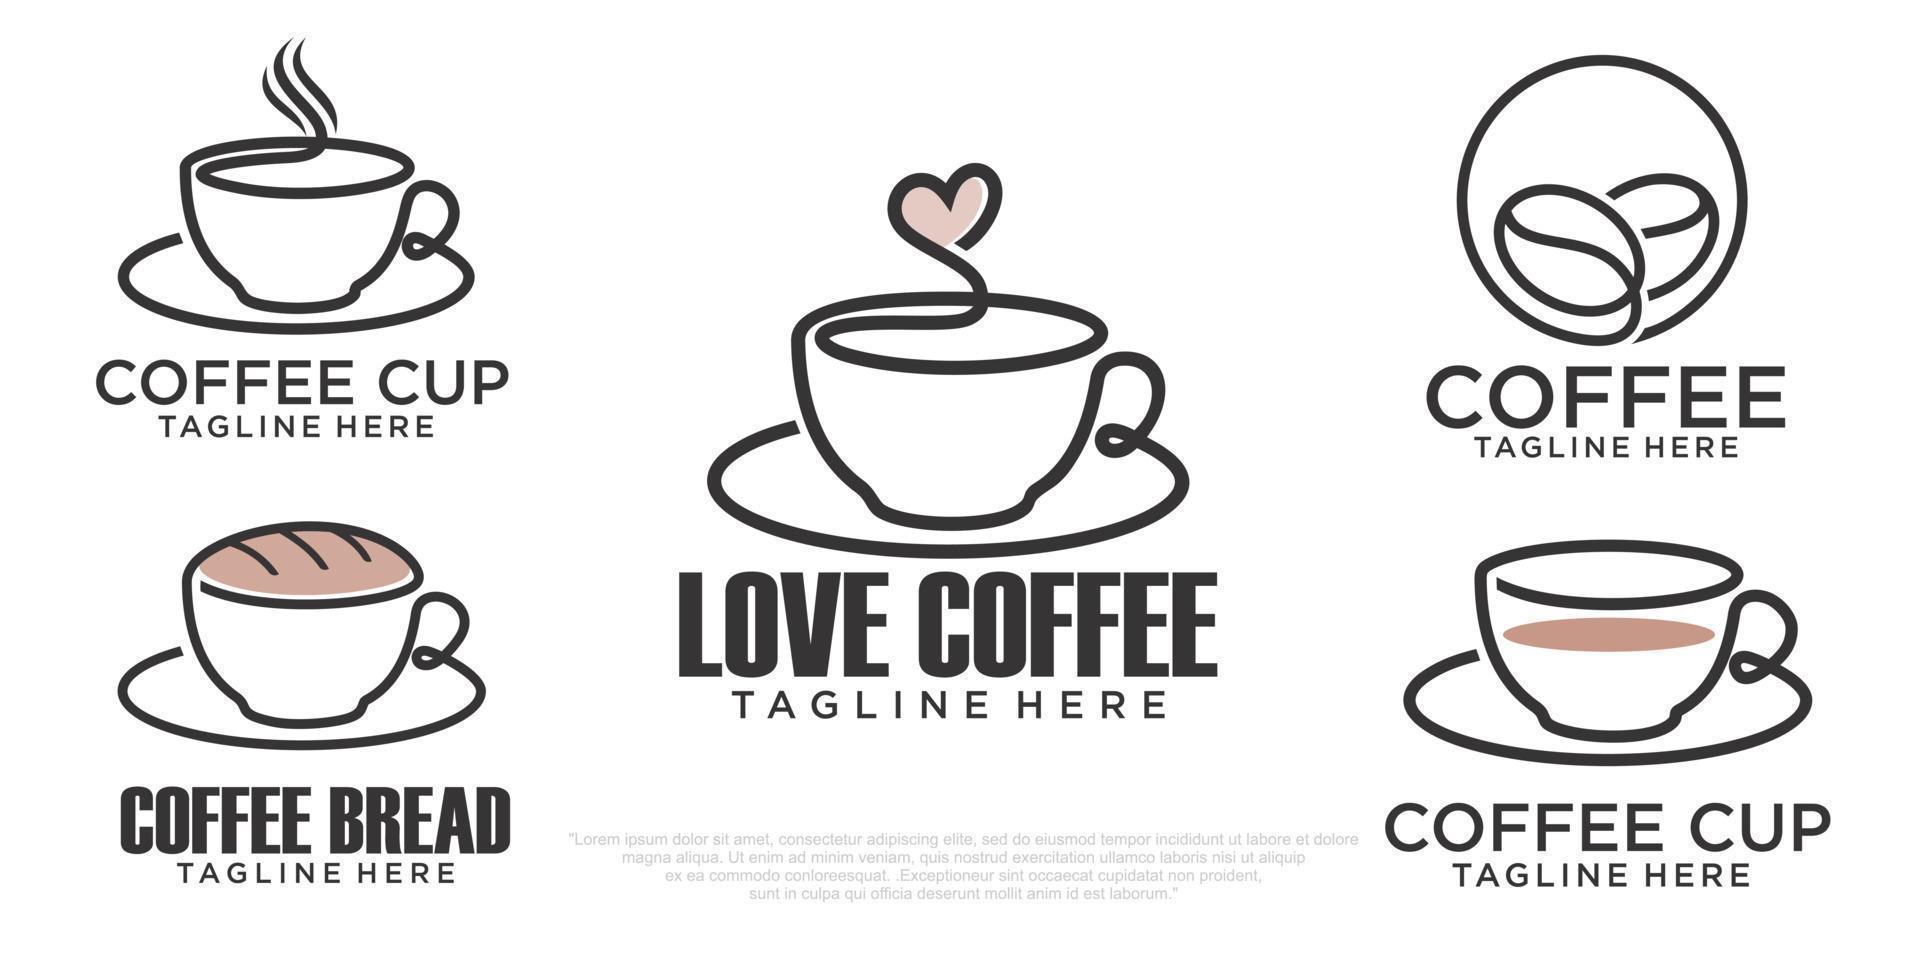 modello di progettazione del logo dell'insieme dell'icona di vettore della tazza di caffè. etichette di caffetteria vettoriale.